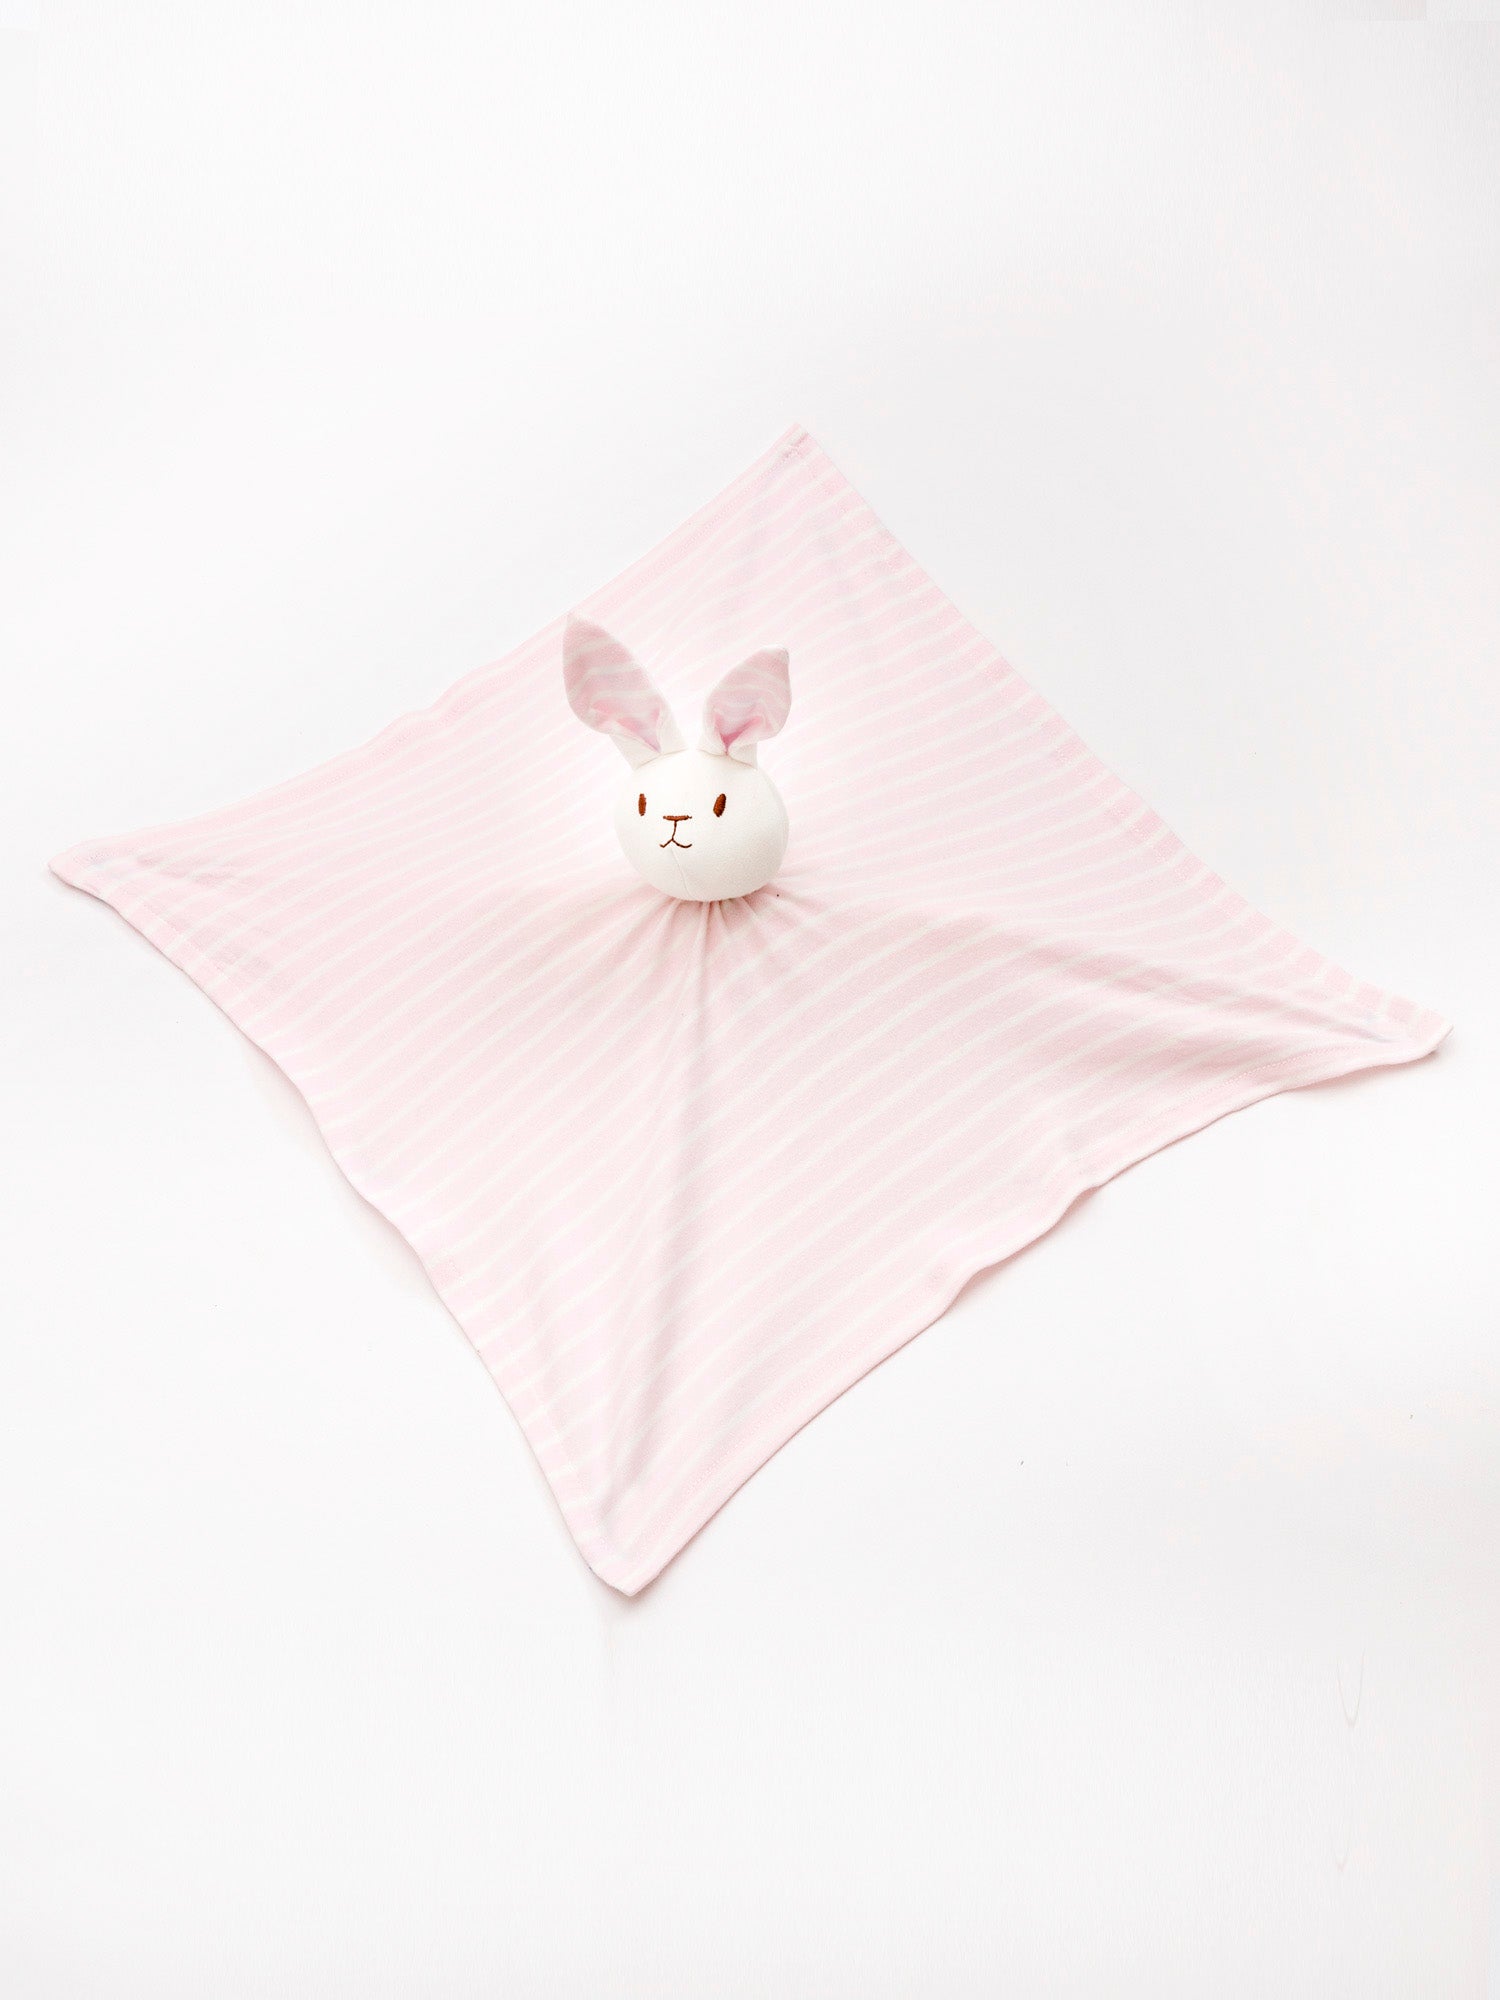 Lovey Bunny Blanket Friend - Pink Stripe